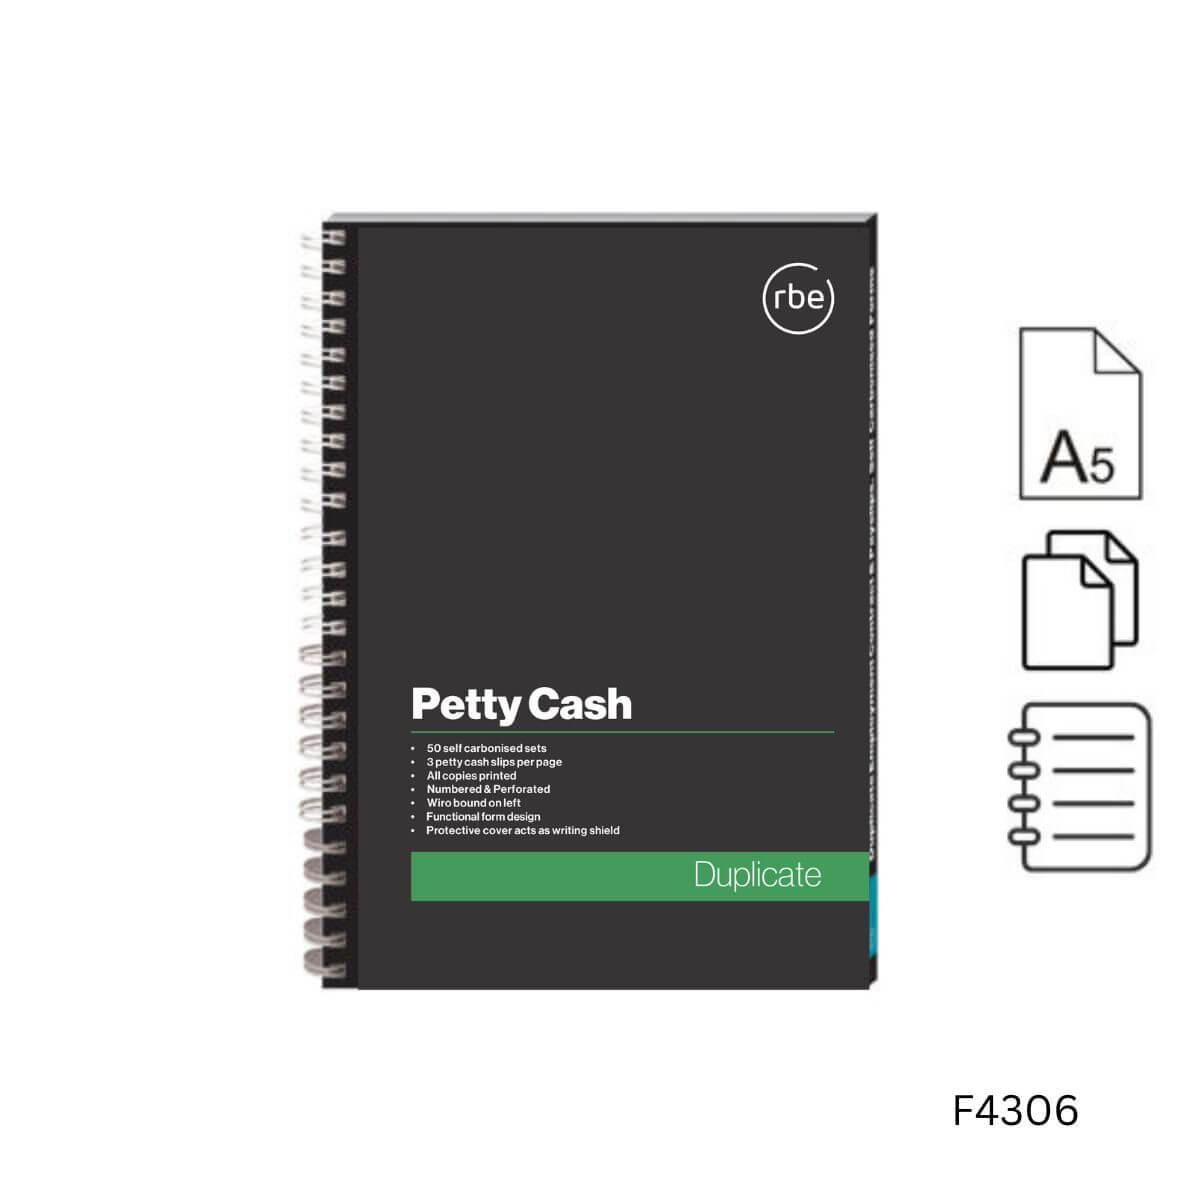 A5 Petty Cash Book Duplicate